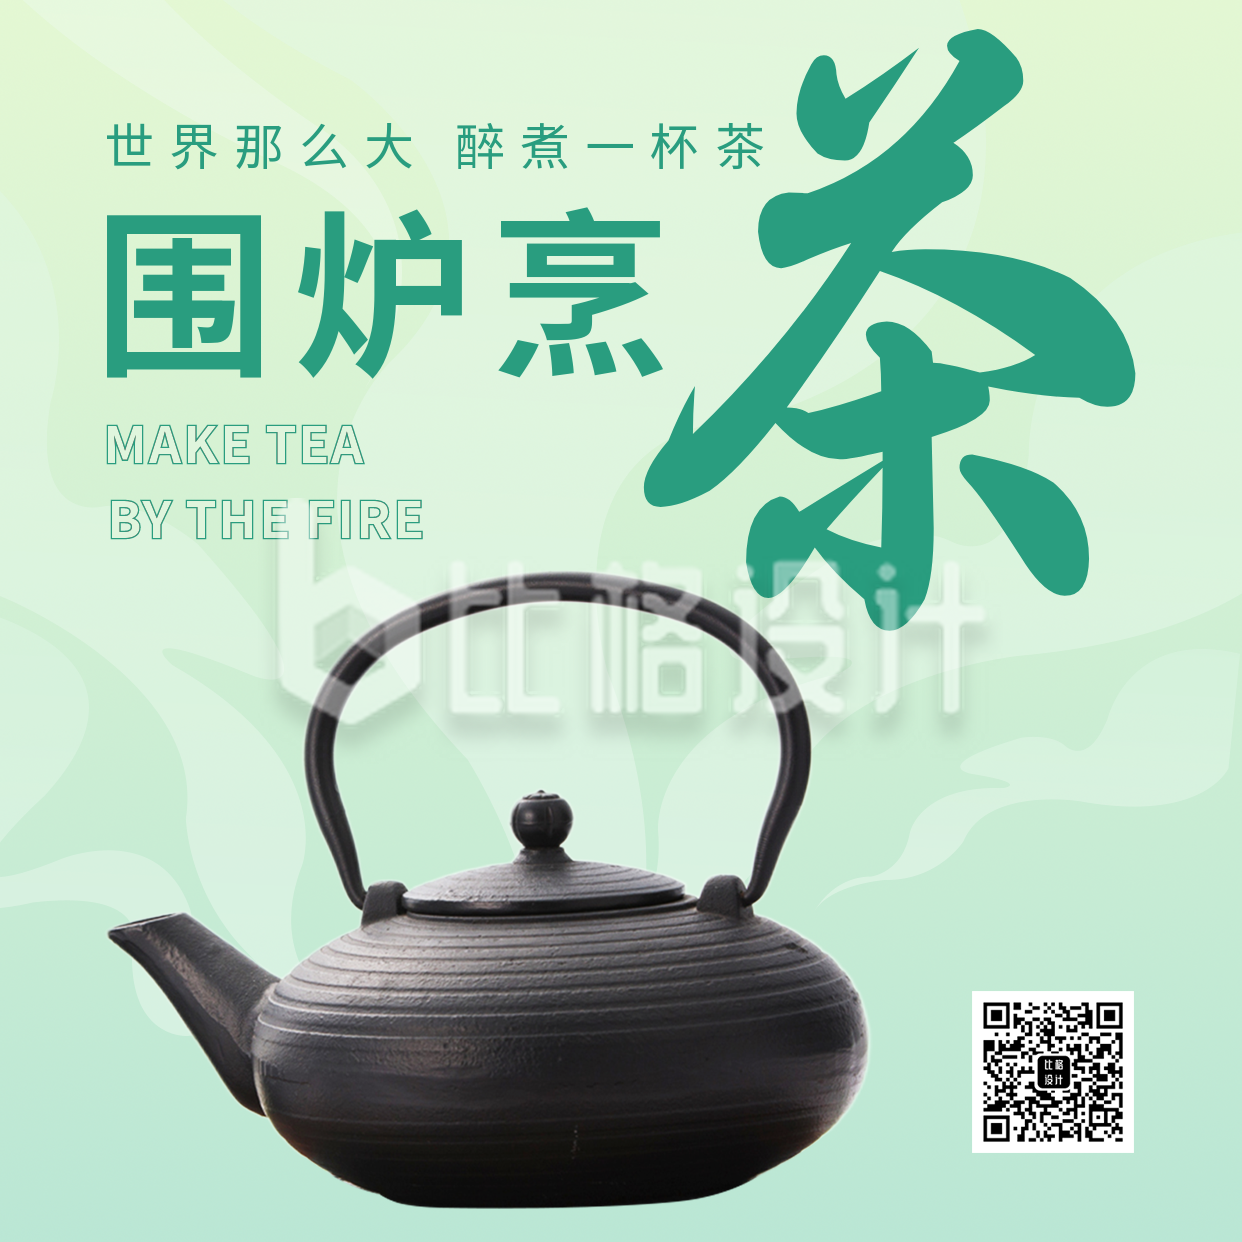 围炉煮茶活动宣传方形海报